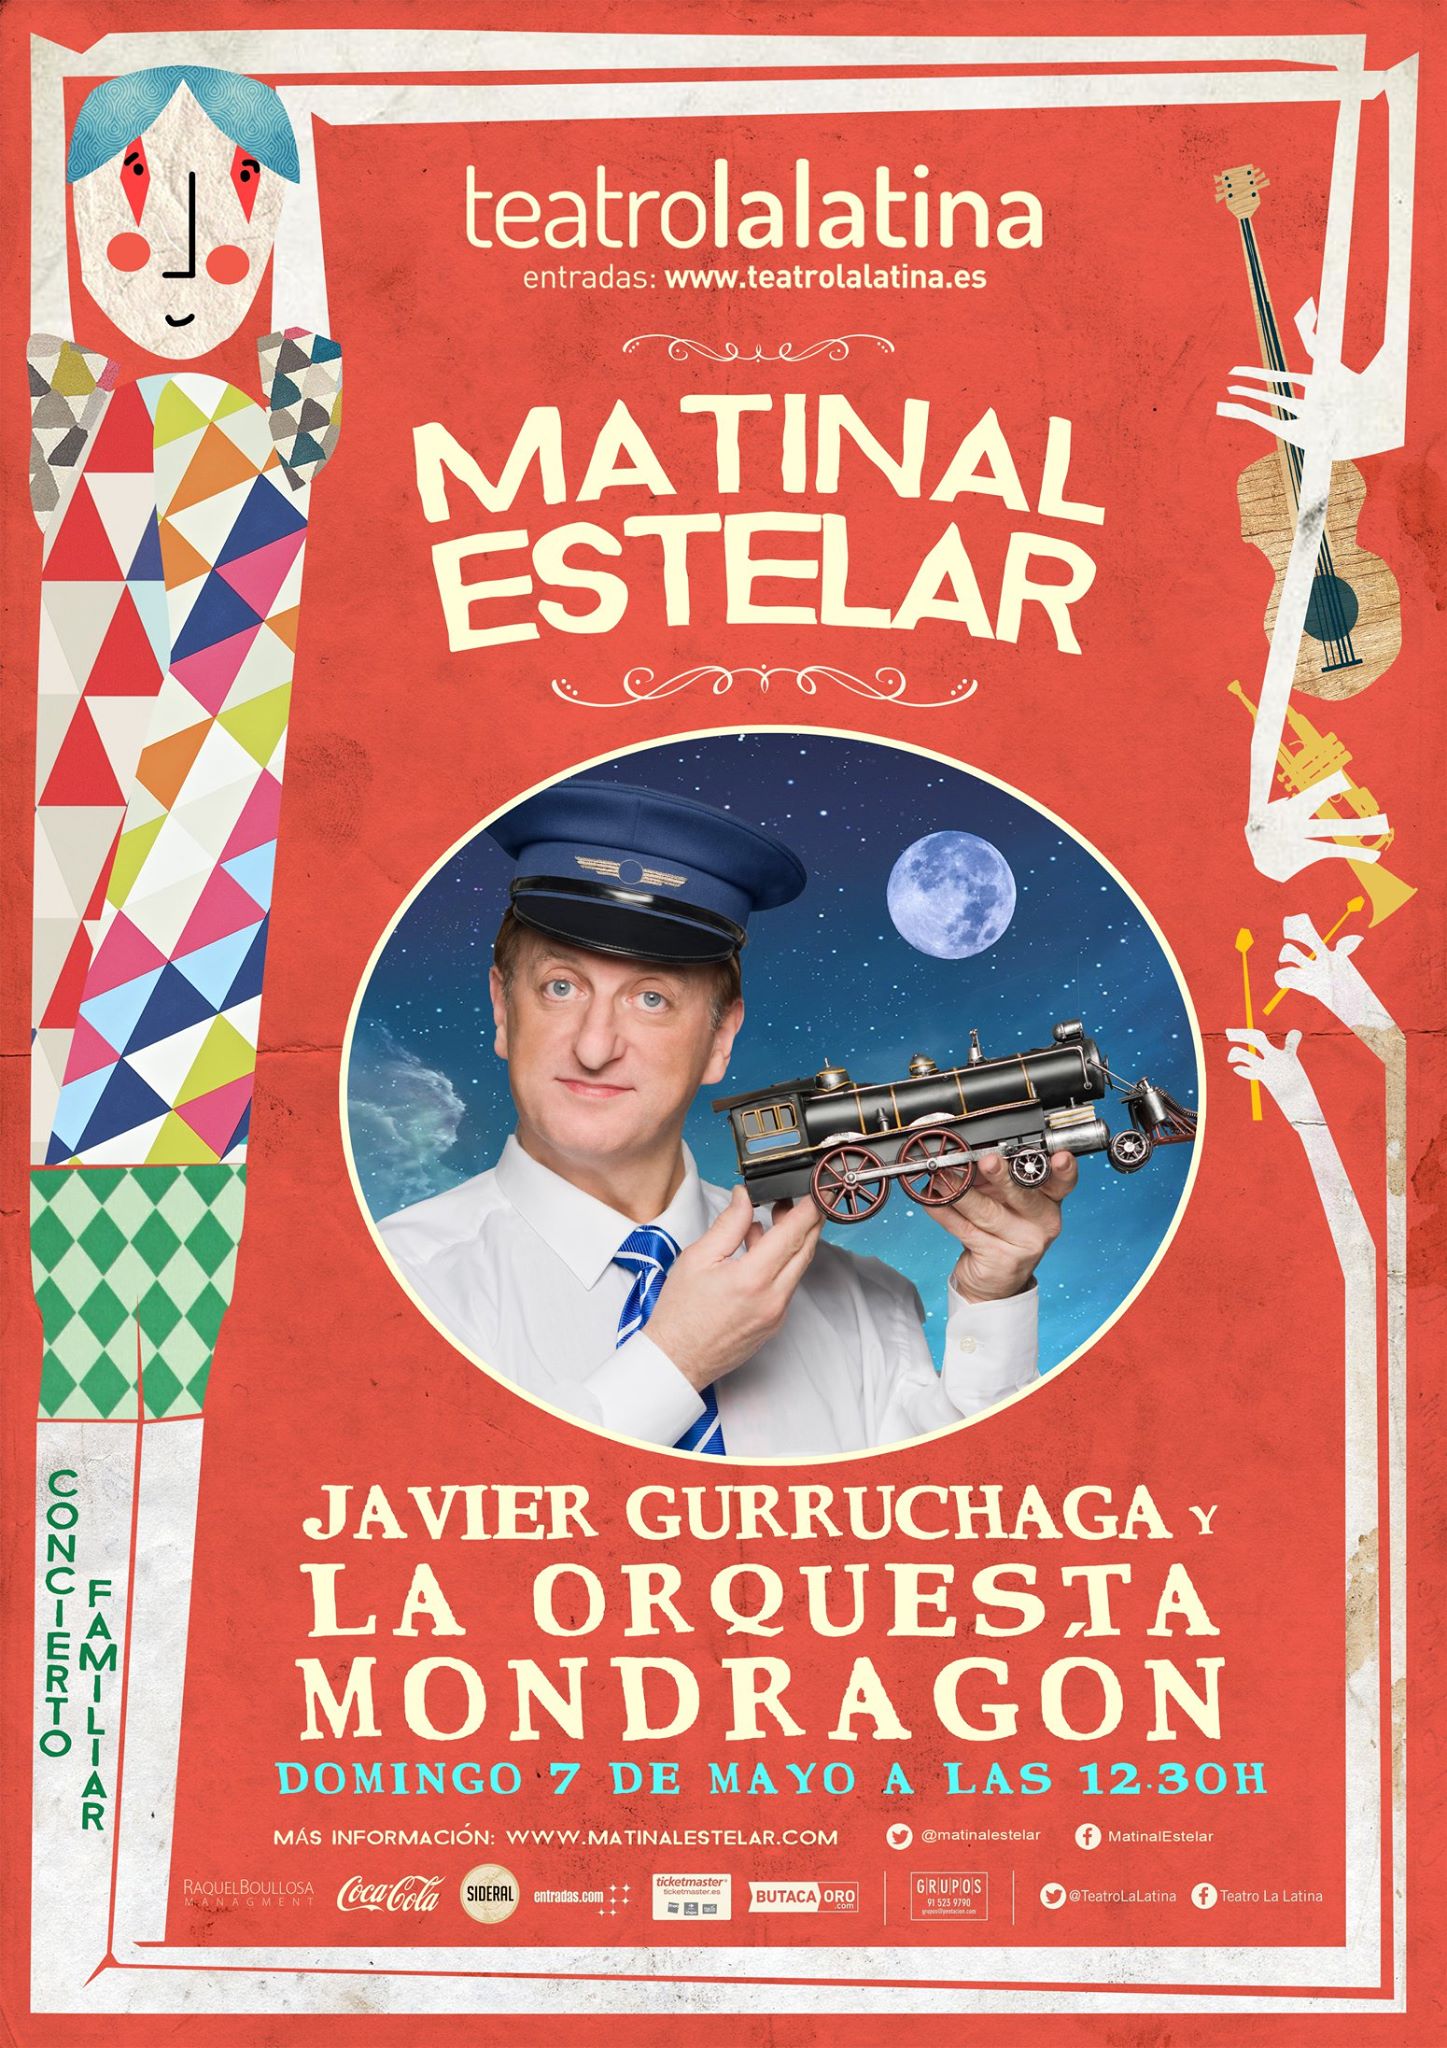 MATINAL ESTELAR: Javier Gurruchaga y La Orquesta Mondragón